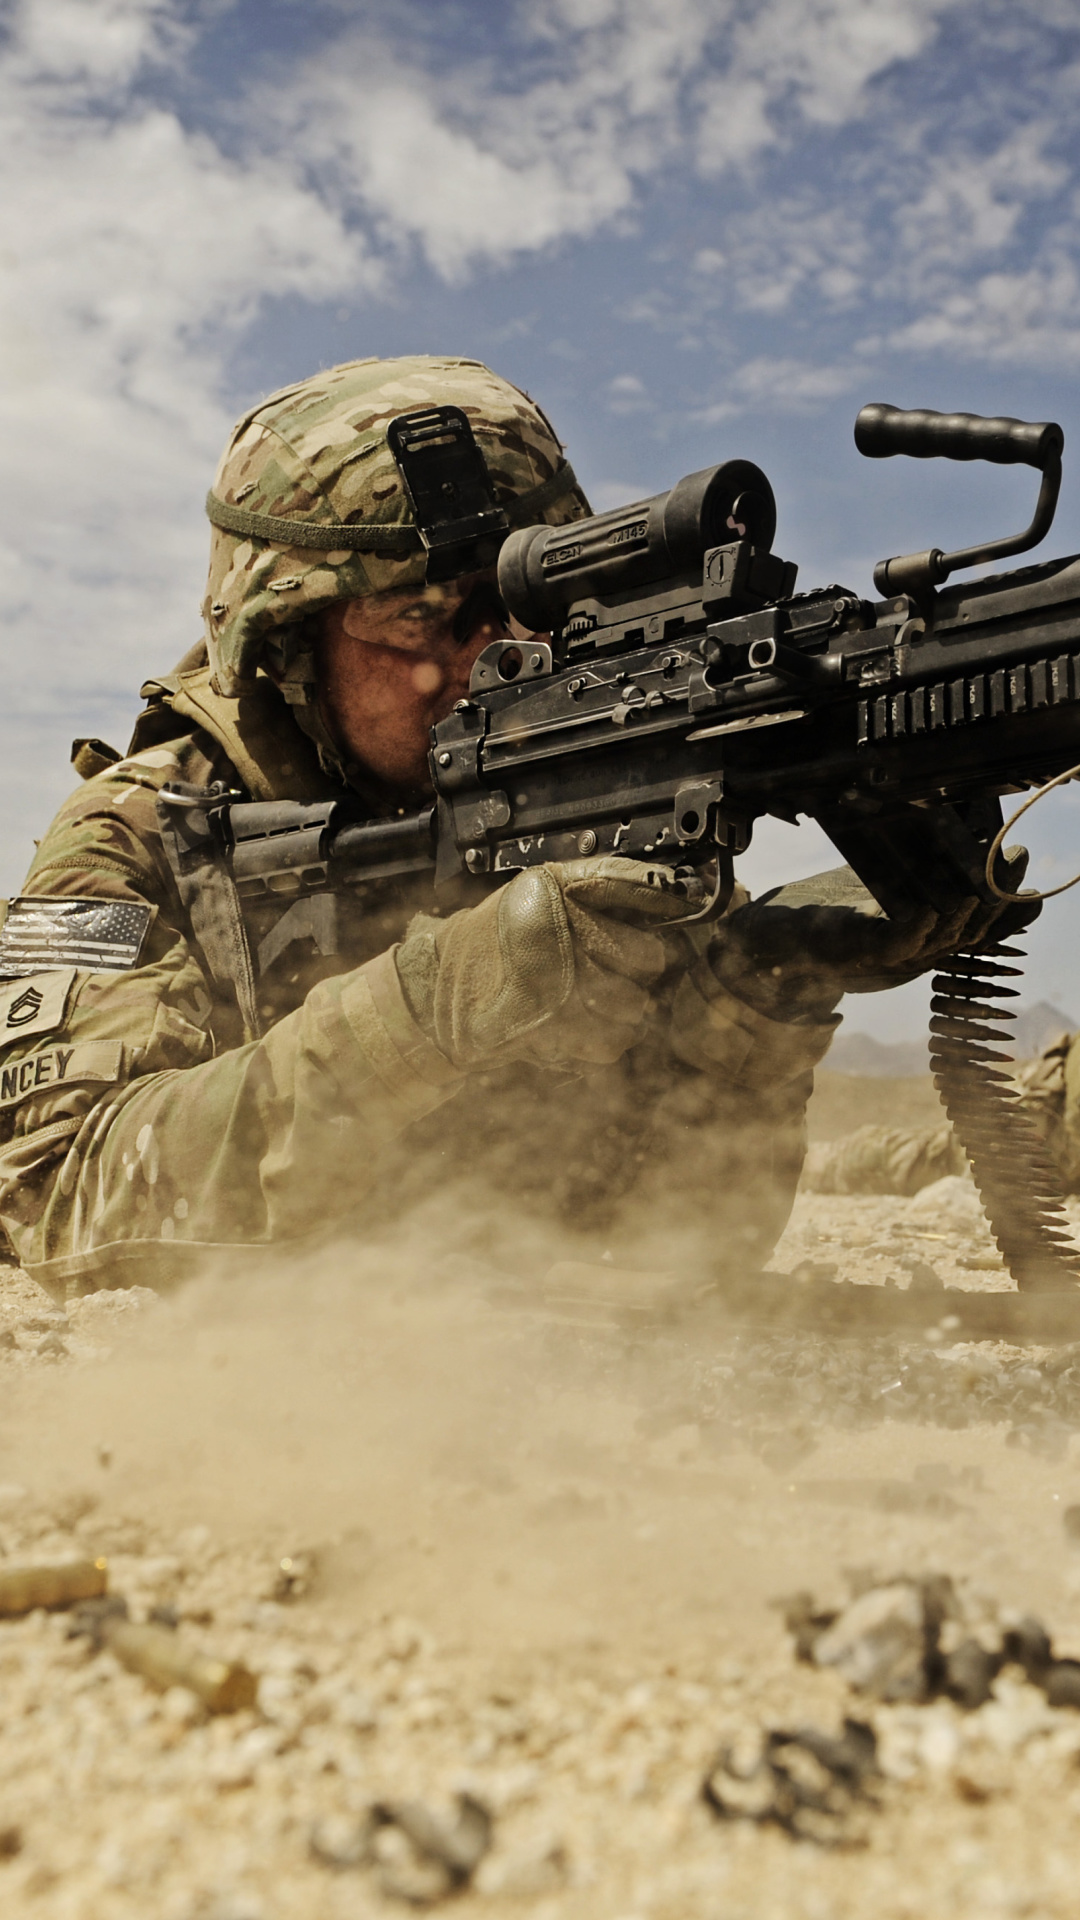 Обои Soldier with M60 machine gun 1080x1920